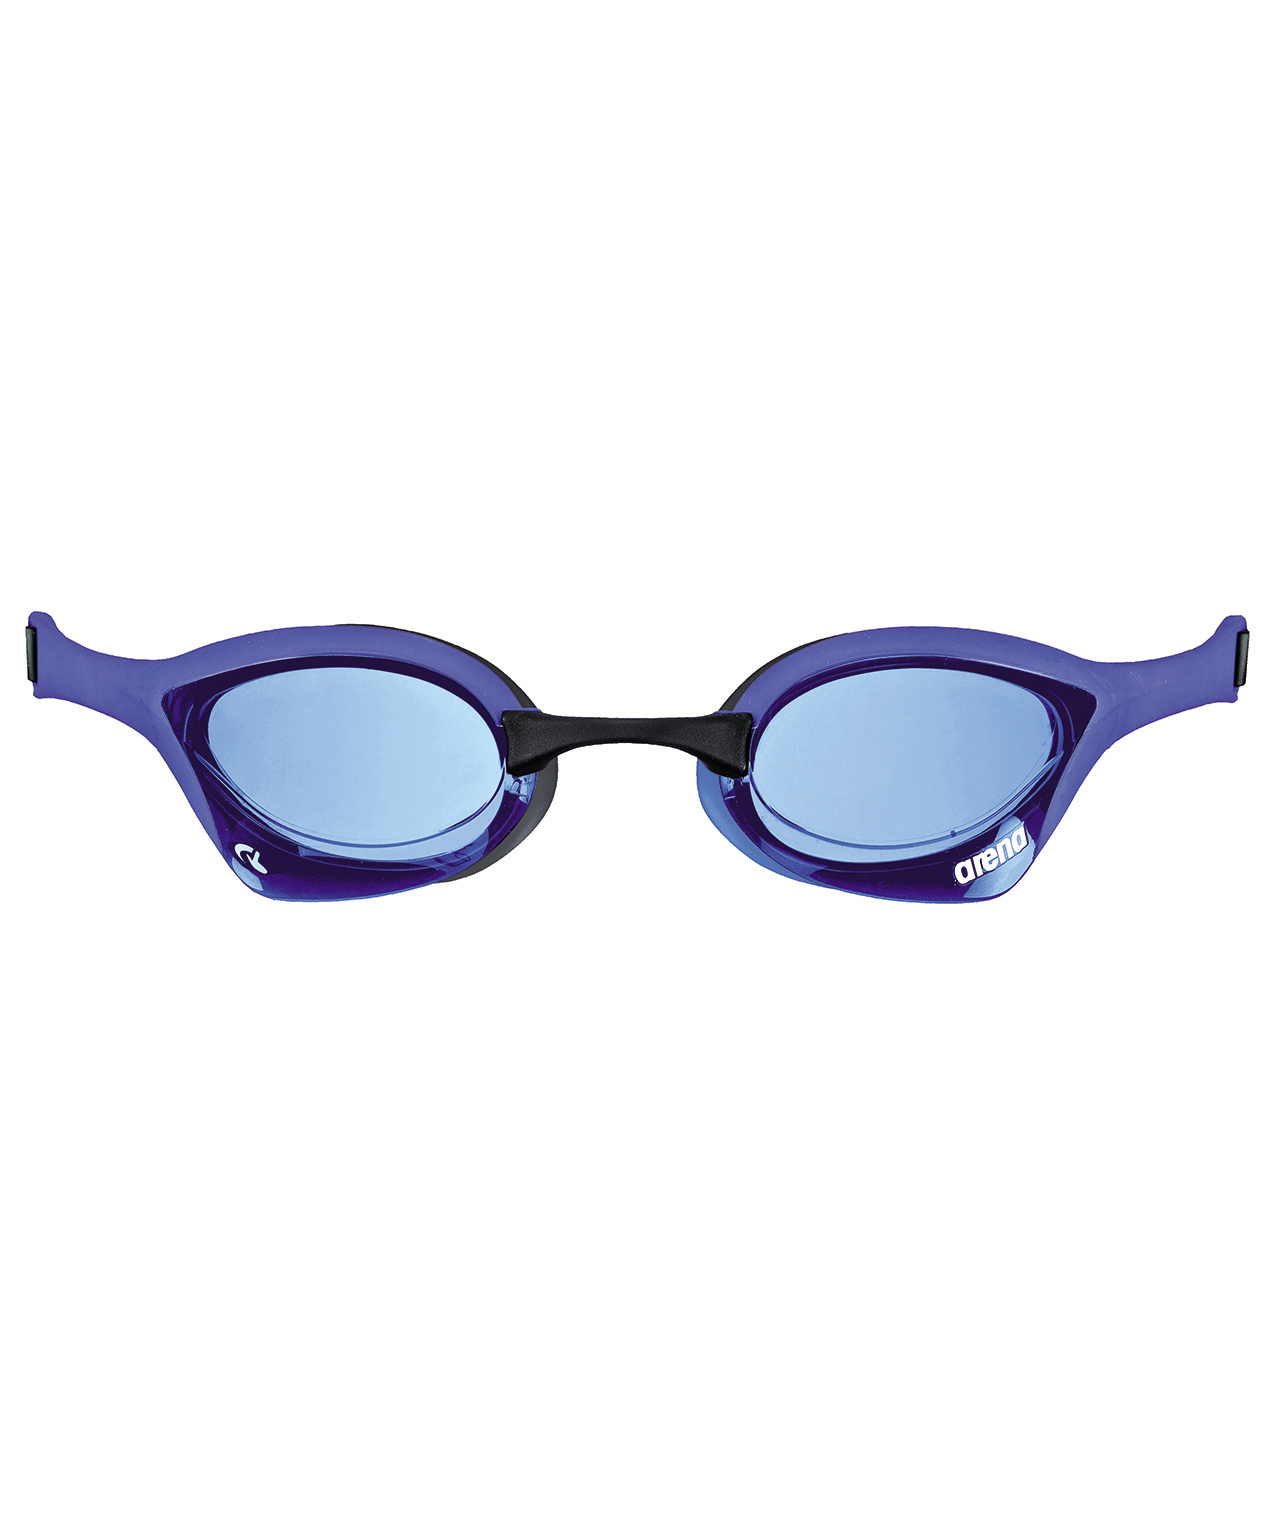 Gafas de natación ARENA COBRA ULTRA SWIPE MIRROR Plata/Azul